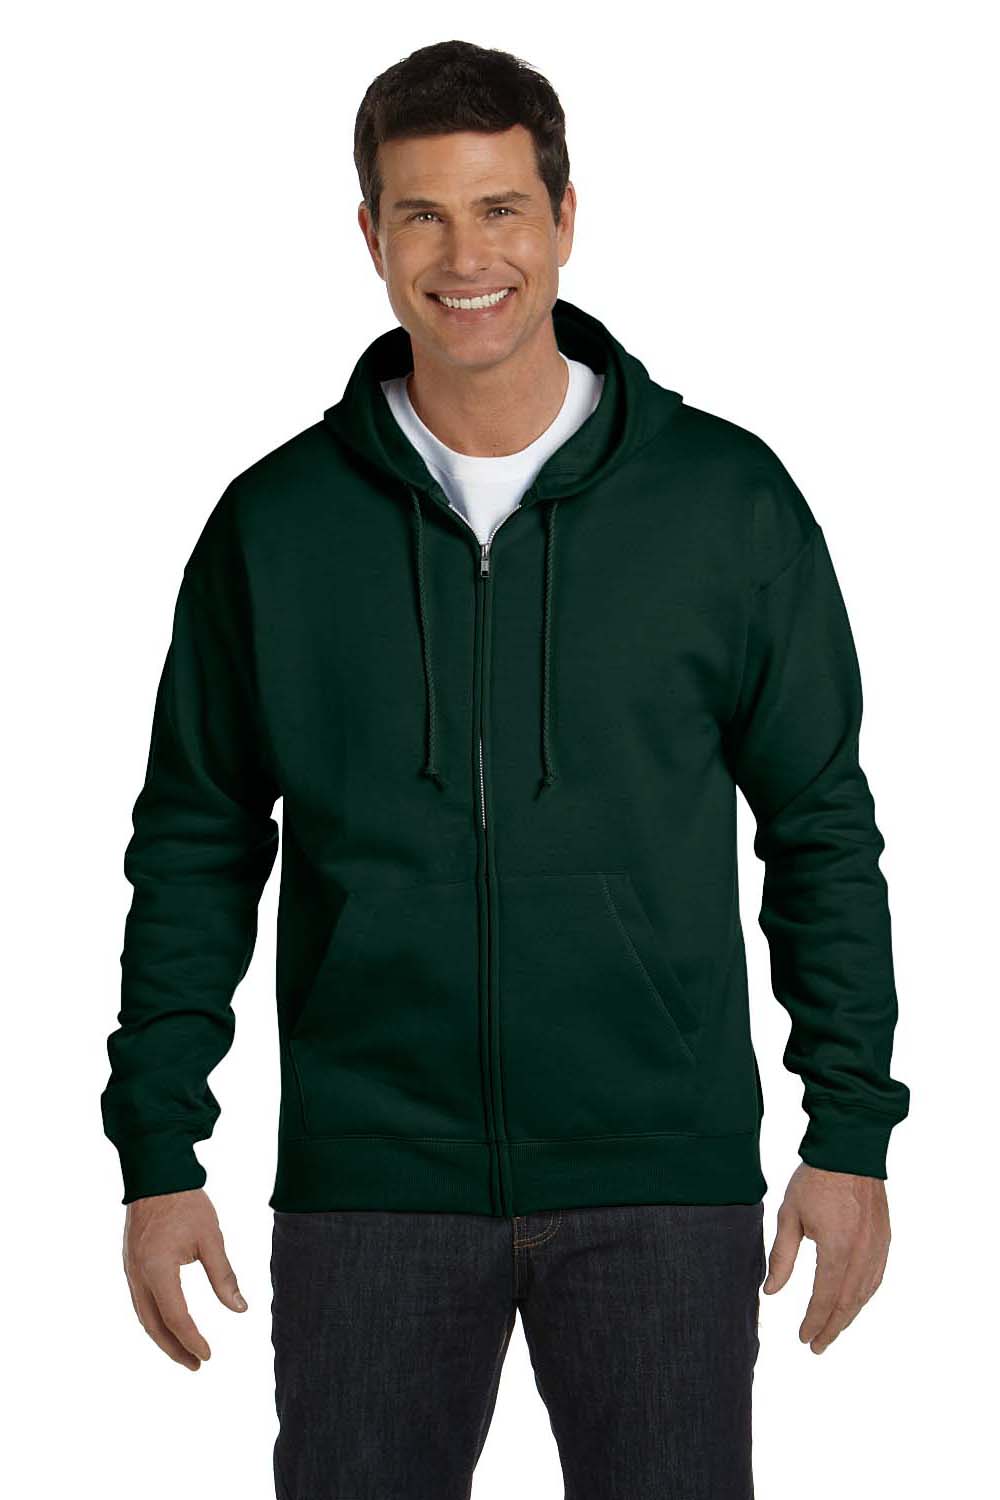 Hanes P180 Mens EcoSmart Print Pro XP Full Zip Hooded Sweatshirt Hoodie Forest Green Front